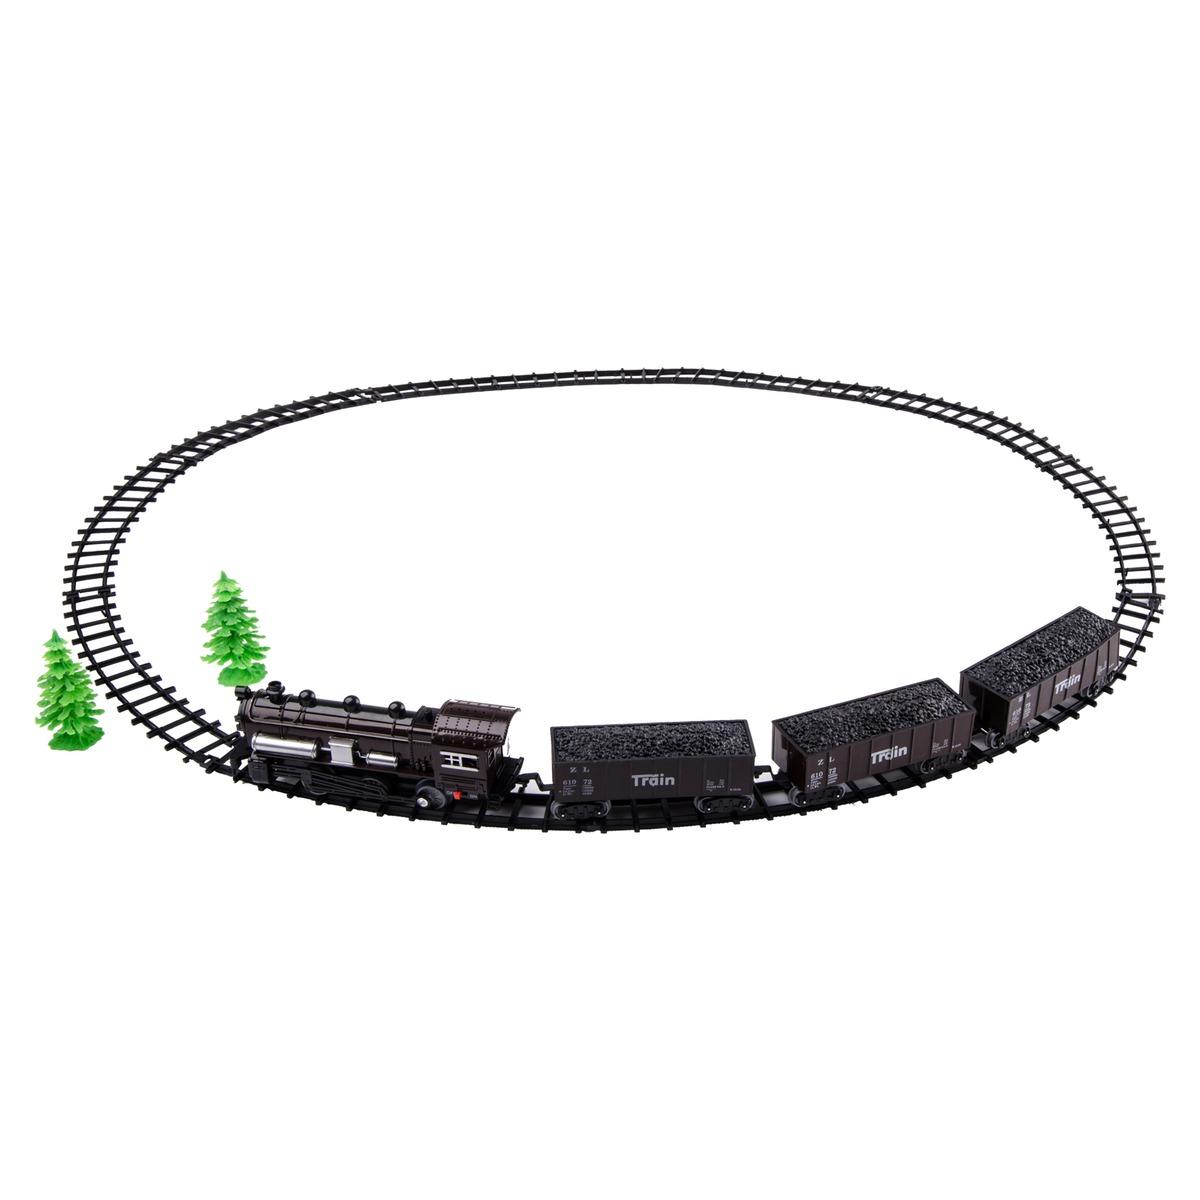 Circuit + train électrique - 54 x 30 x 6 cm - Noir